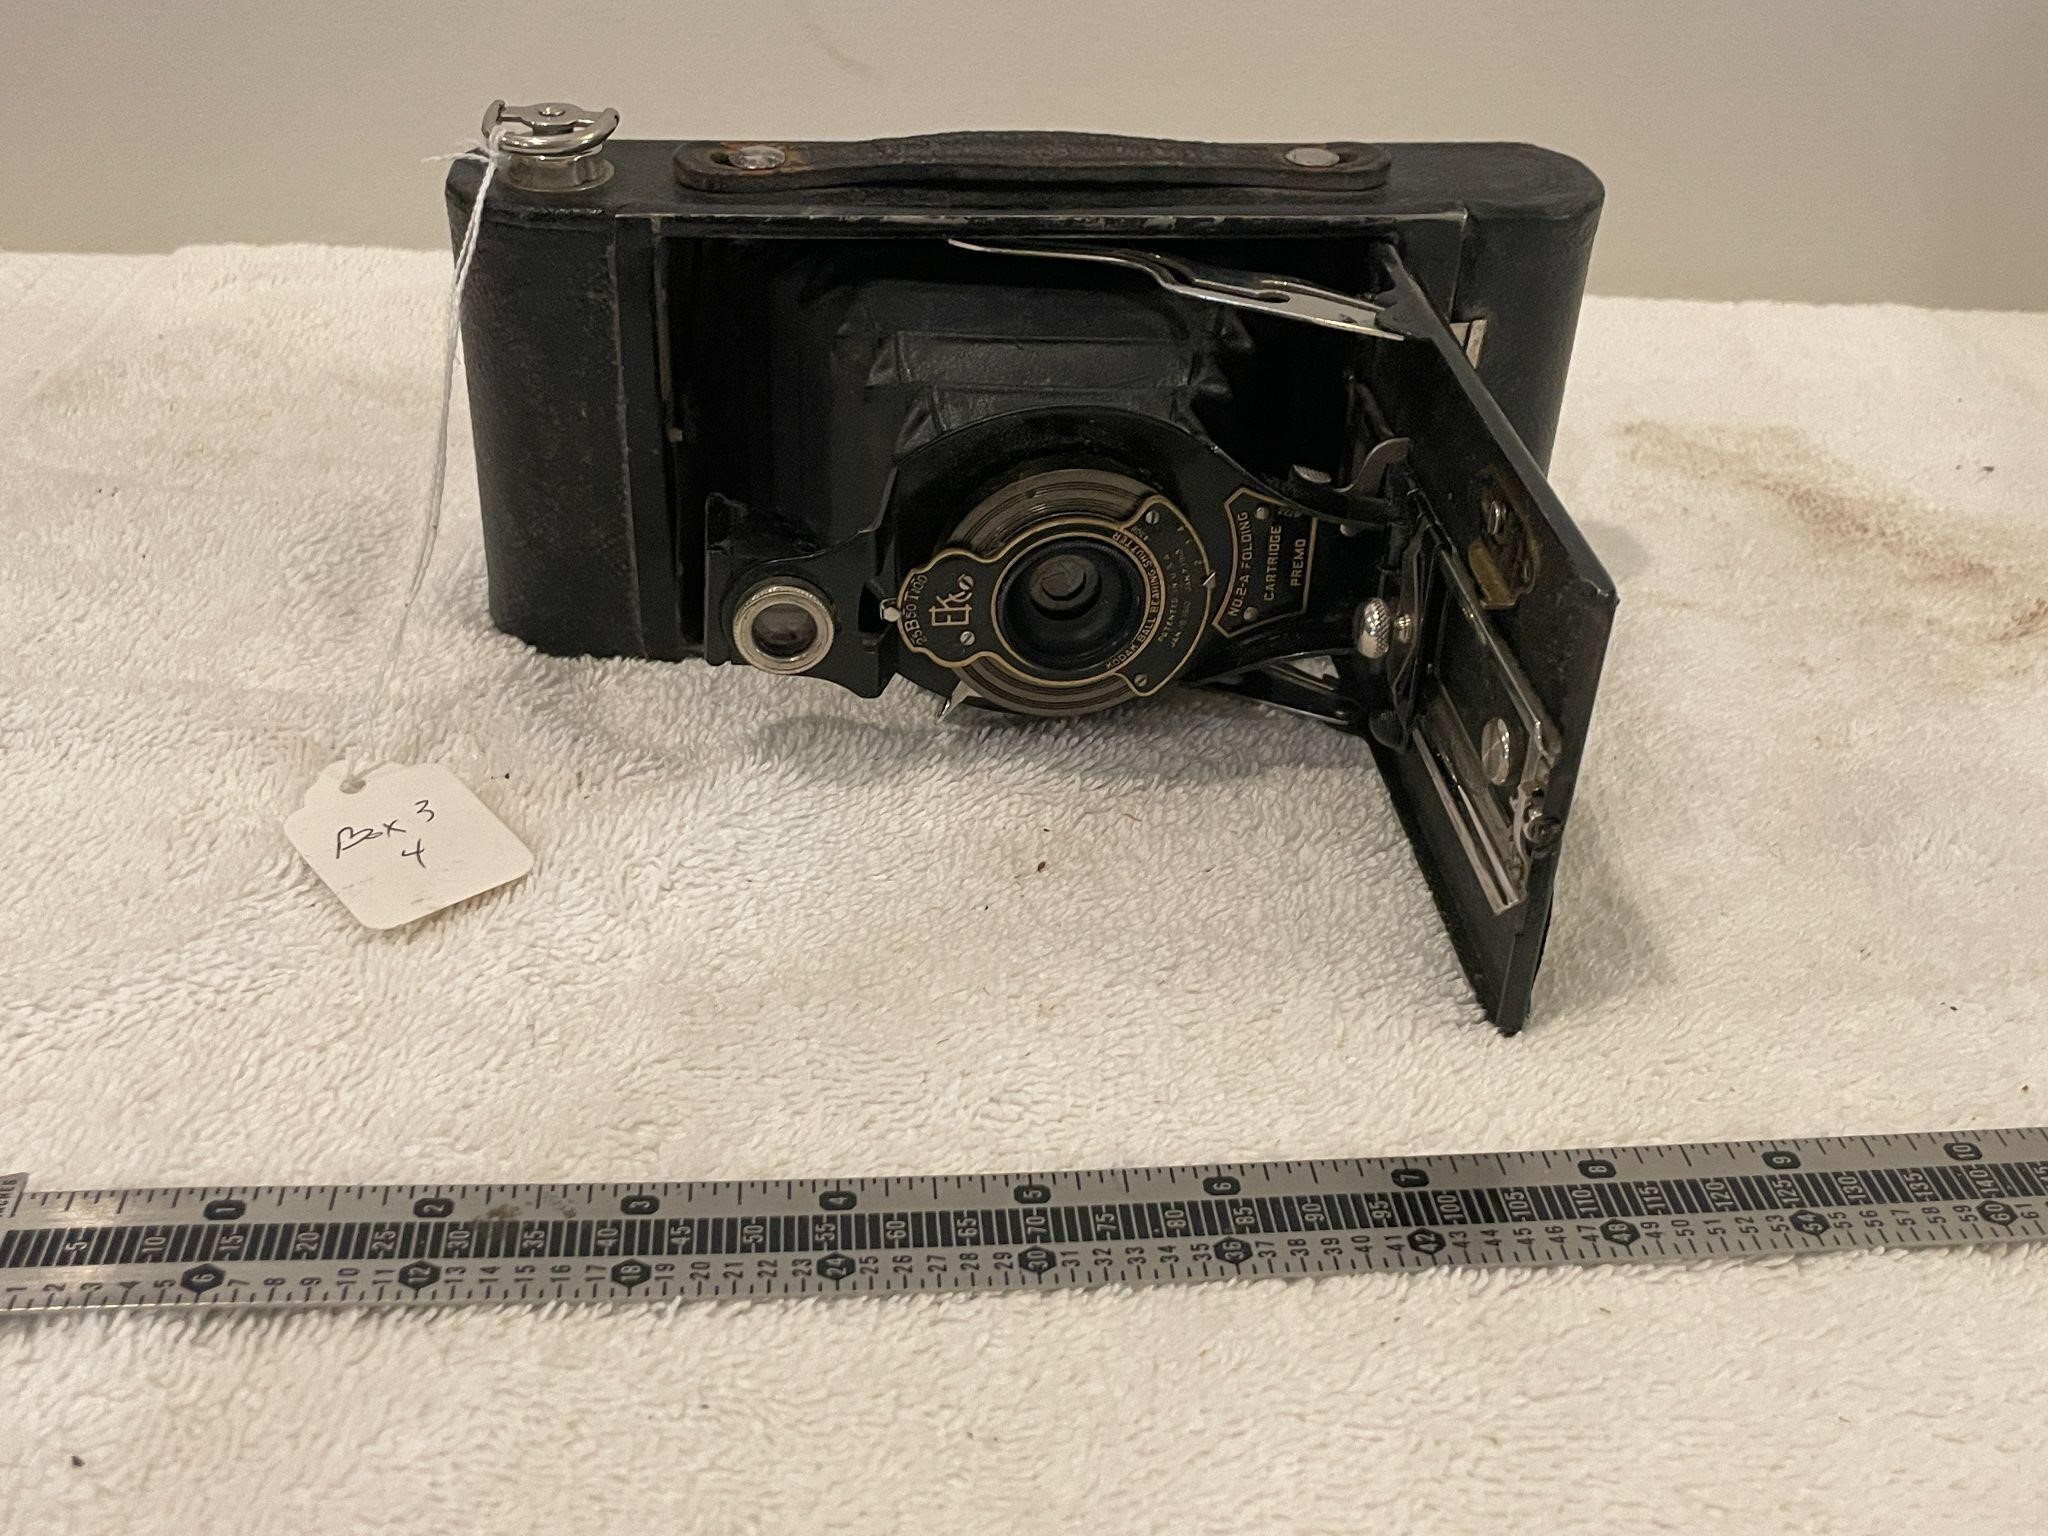 Premo Cartridge Camera, 19-16-20s?